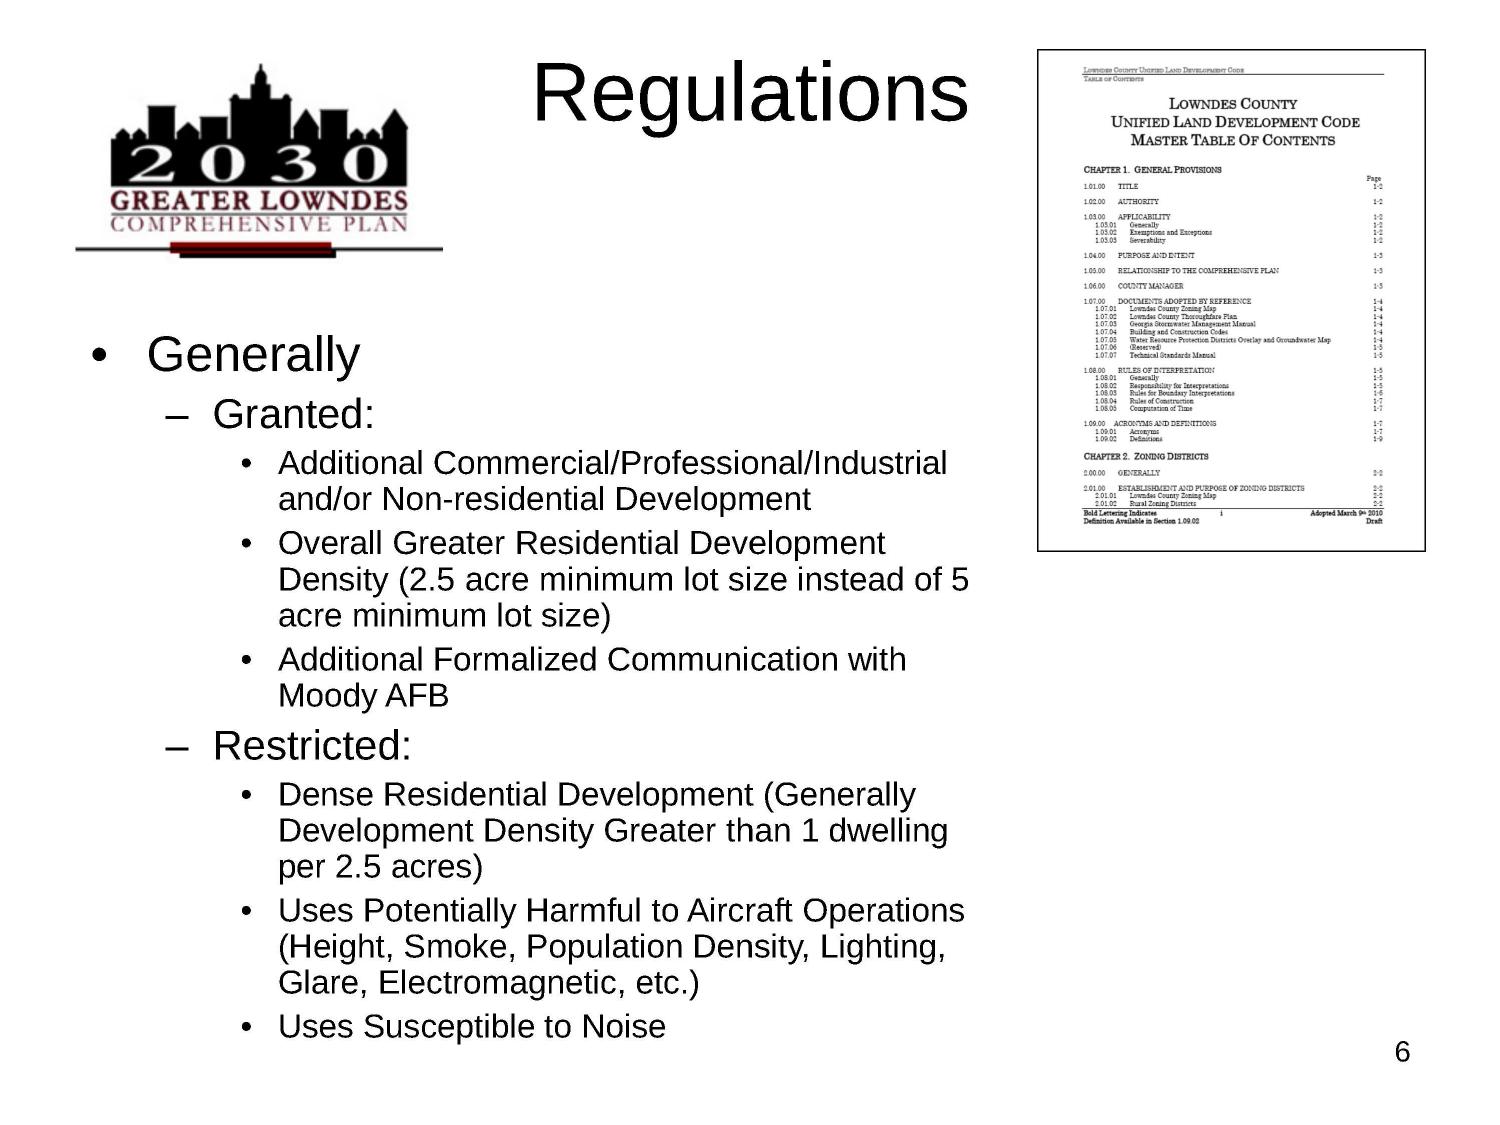 Regulations 2 of 2